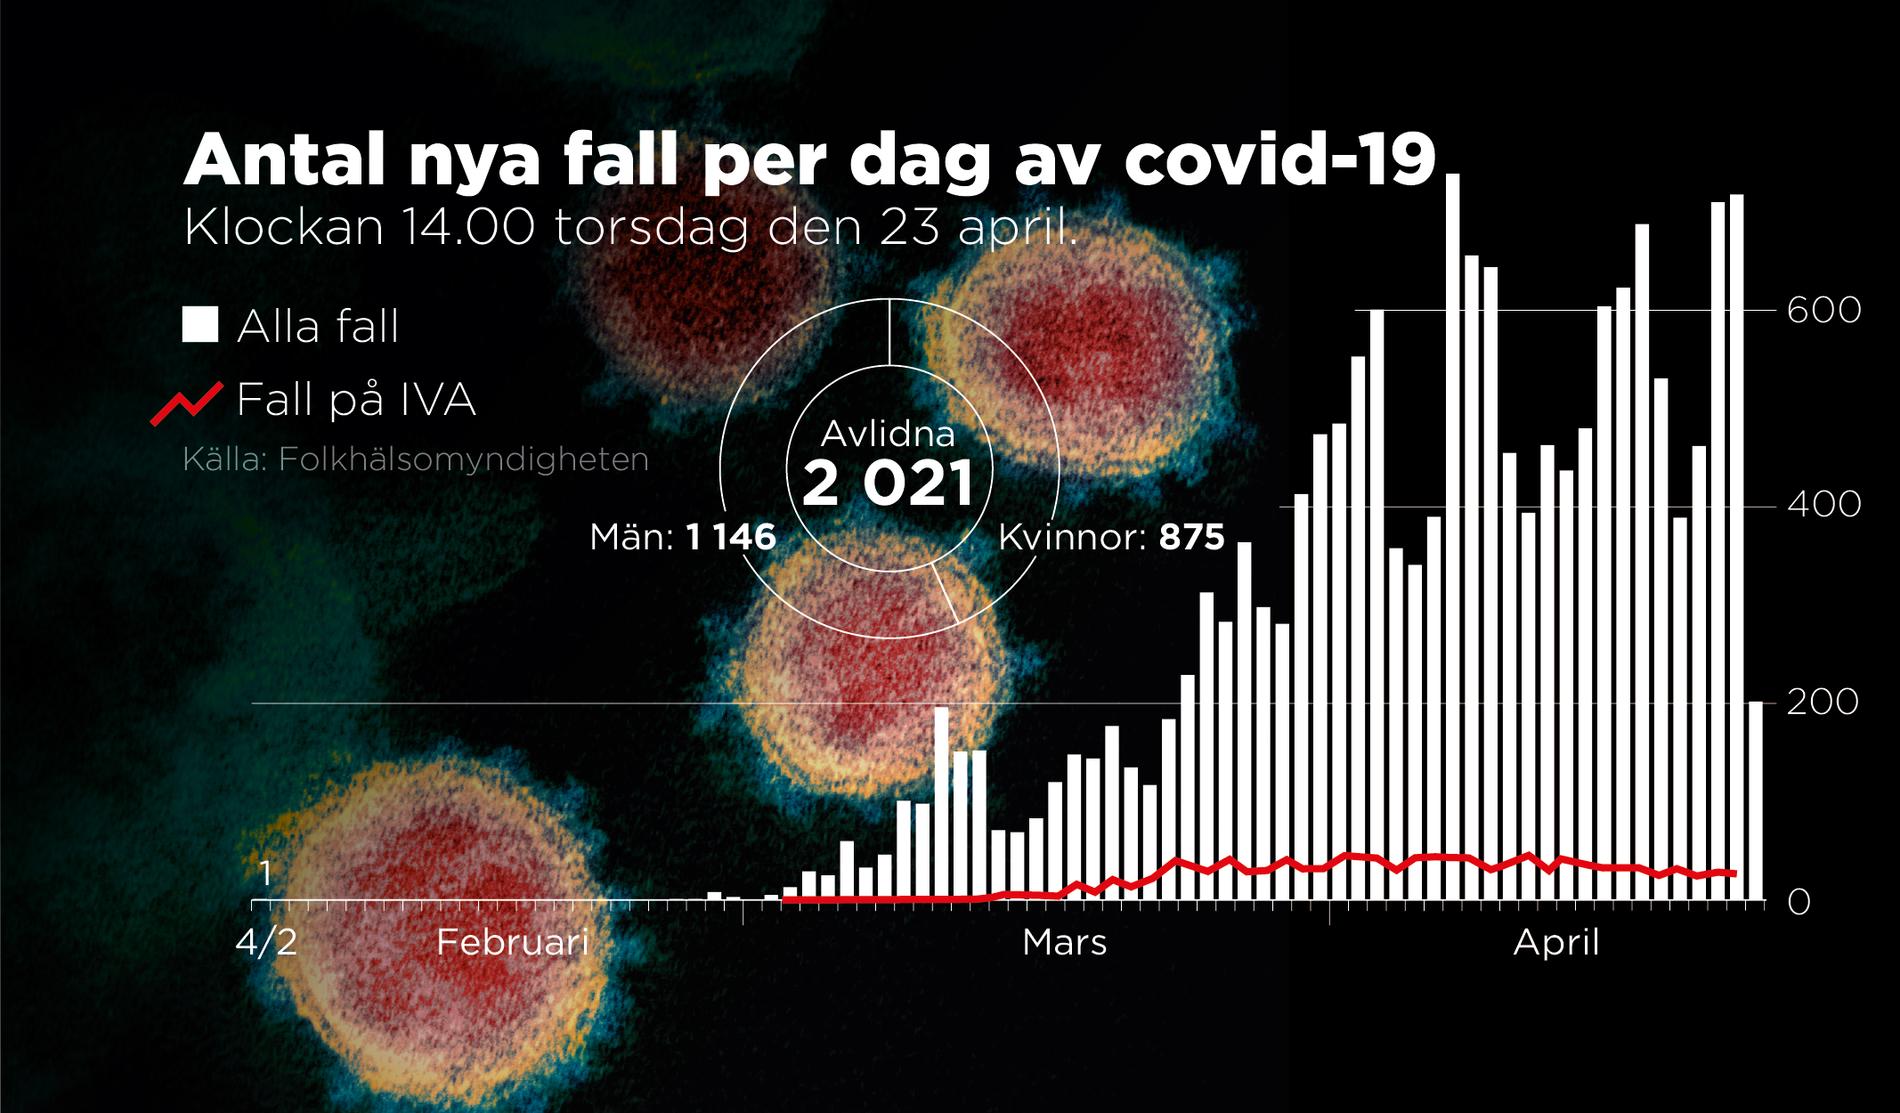 Totalt 2 021 personer har avlidit av covid-19 i Sverige. Det är en ökning med 84 personer som rapporterats in det senaste dygnet, enligt Folkhälsomyndighetens senaste statistik.